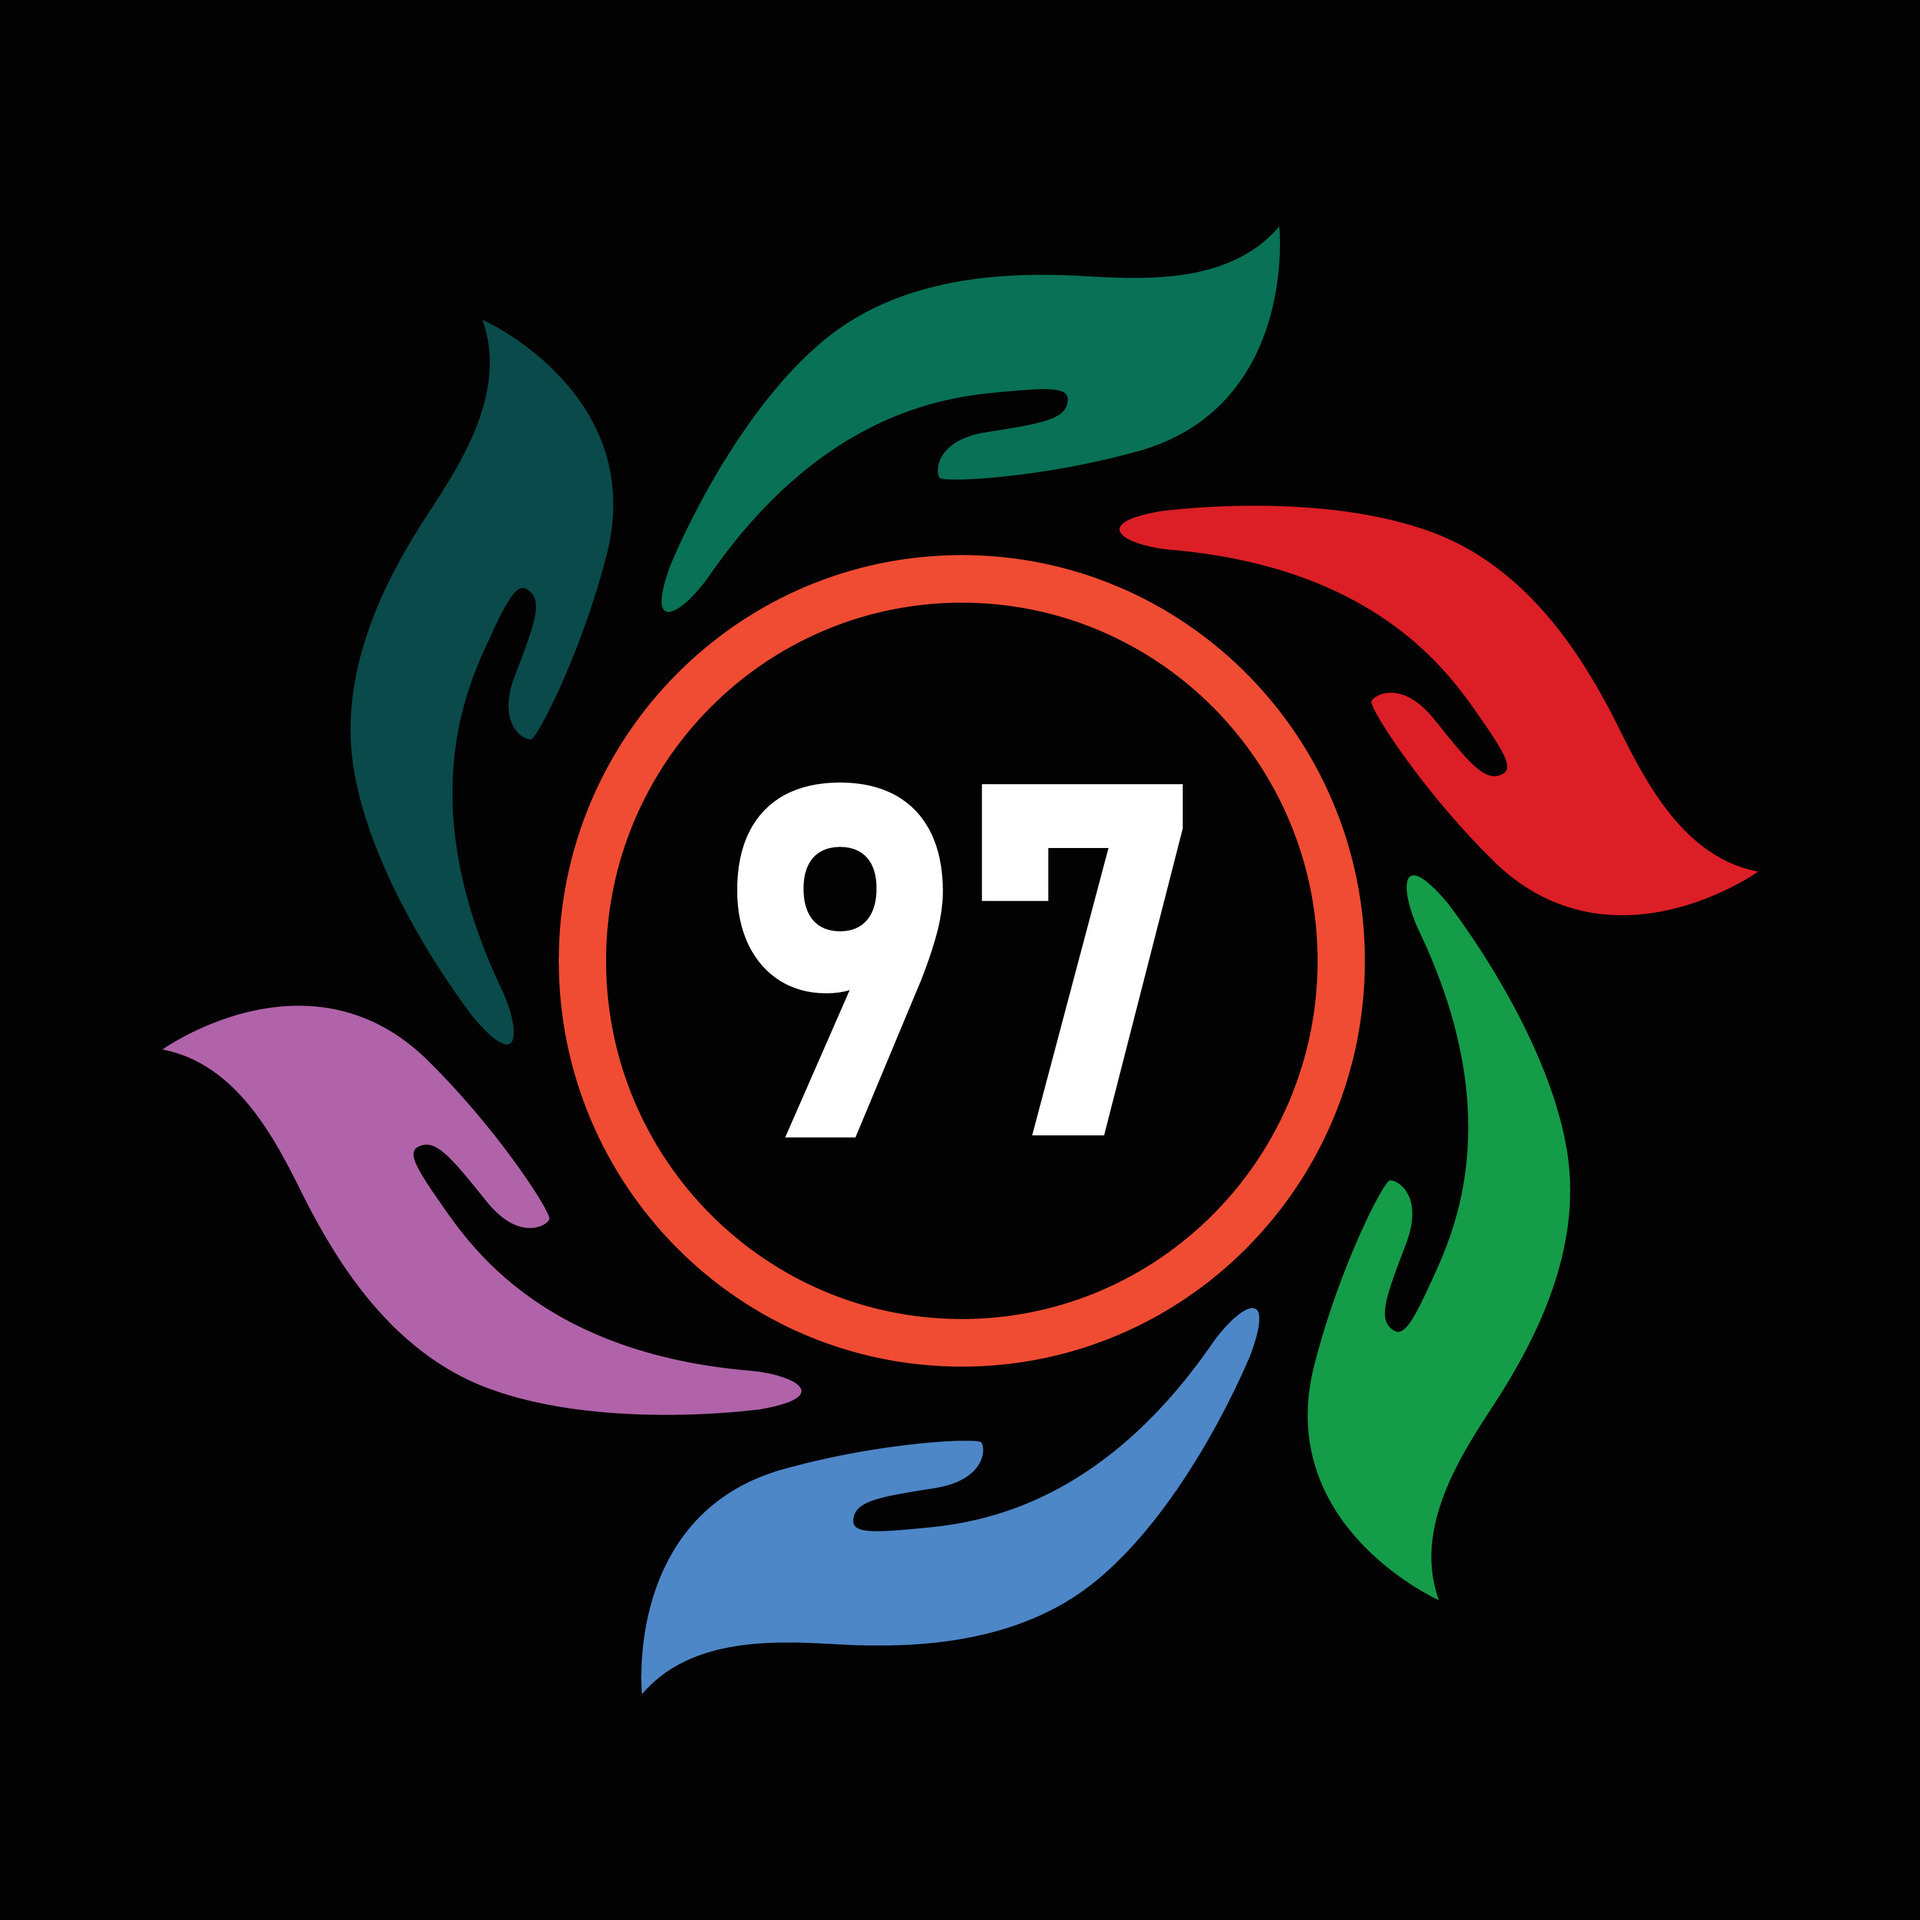 Tìm hiểu 97+ ảnh logo bts mới nhất - Tin Học Vui